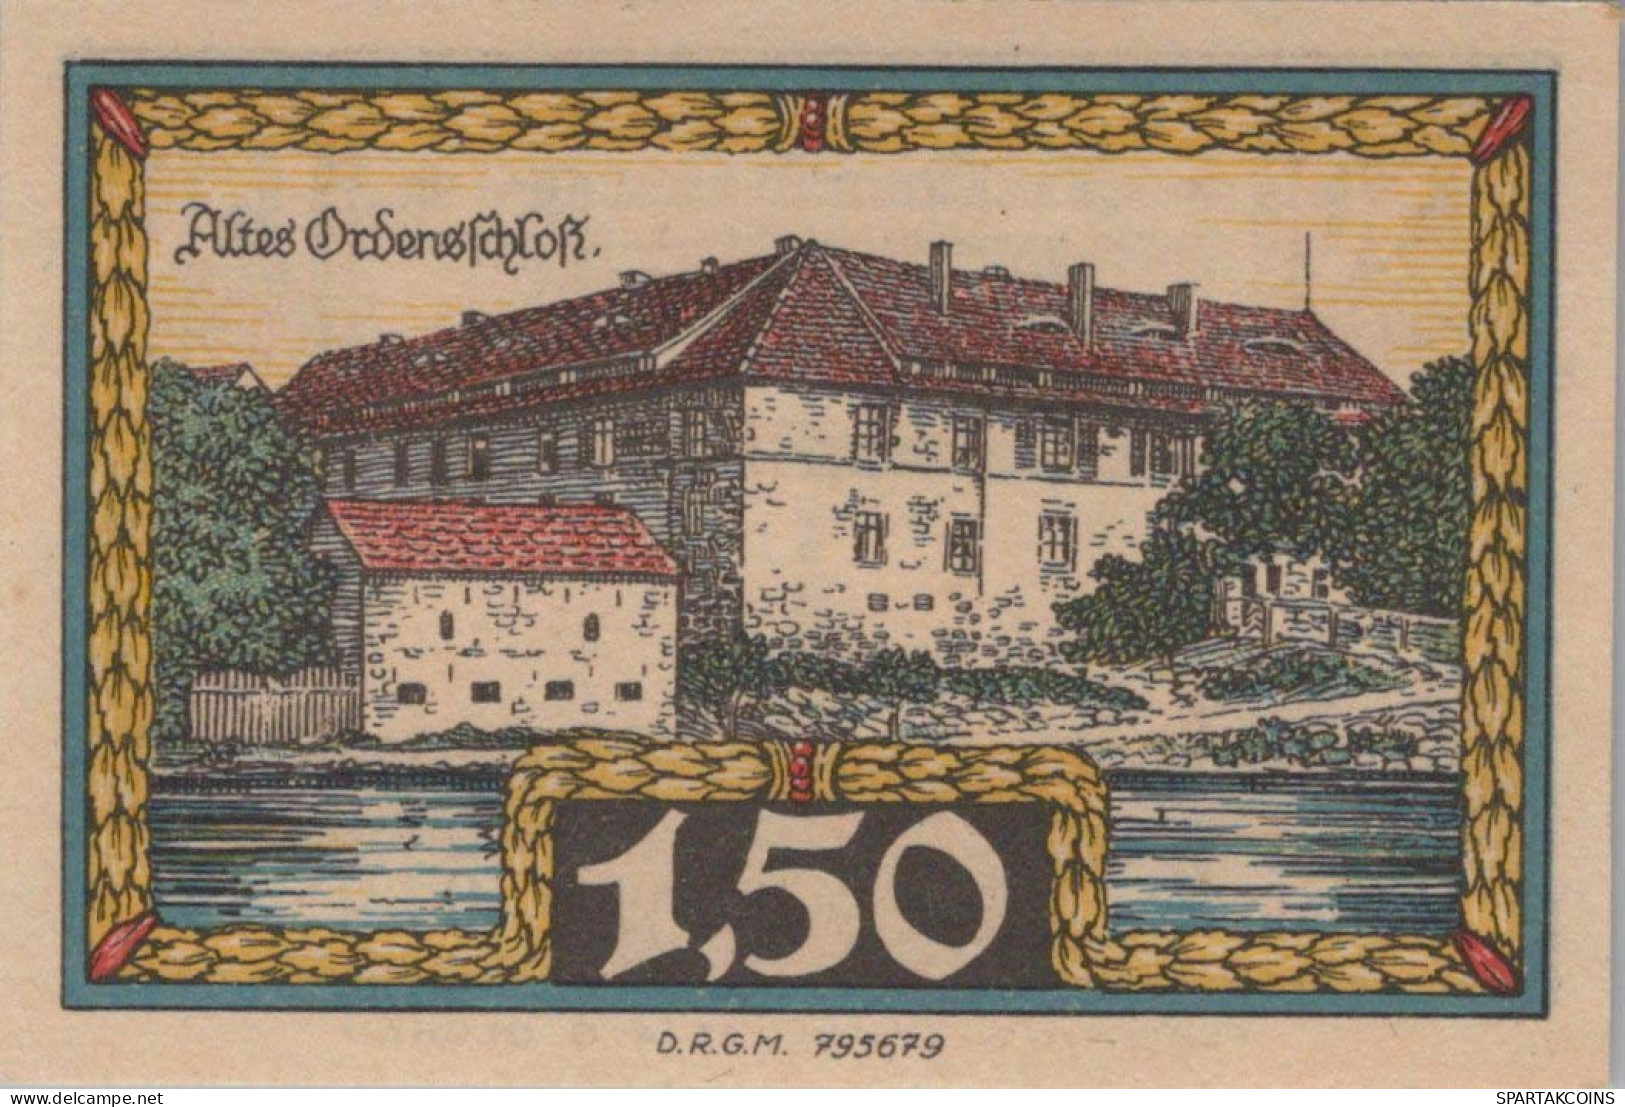 1.5 MARK 1914-1924 Stadt INSTERBURG East PRUSSLAND UNC DEUTSCHLAND Notgeld #PD136 - [11] Local Banknote Issues